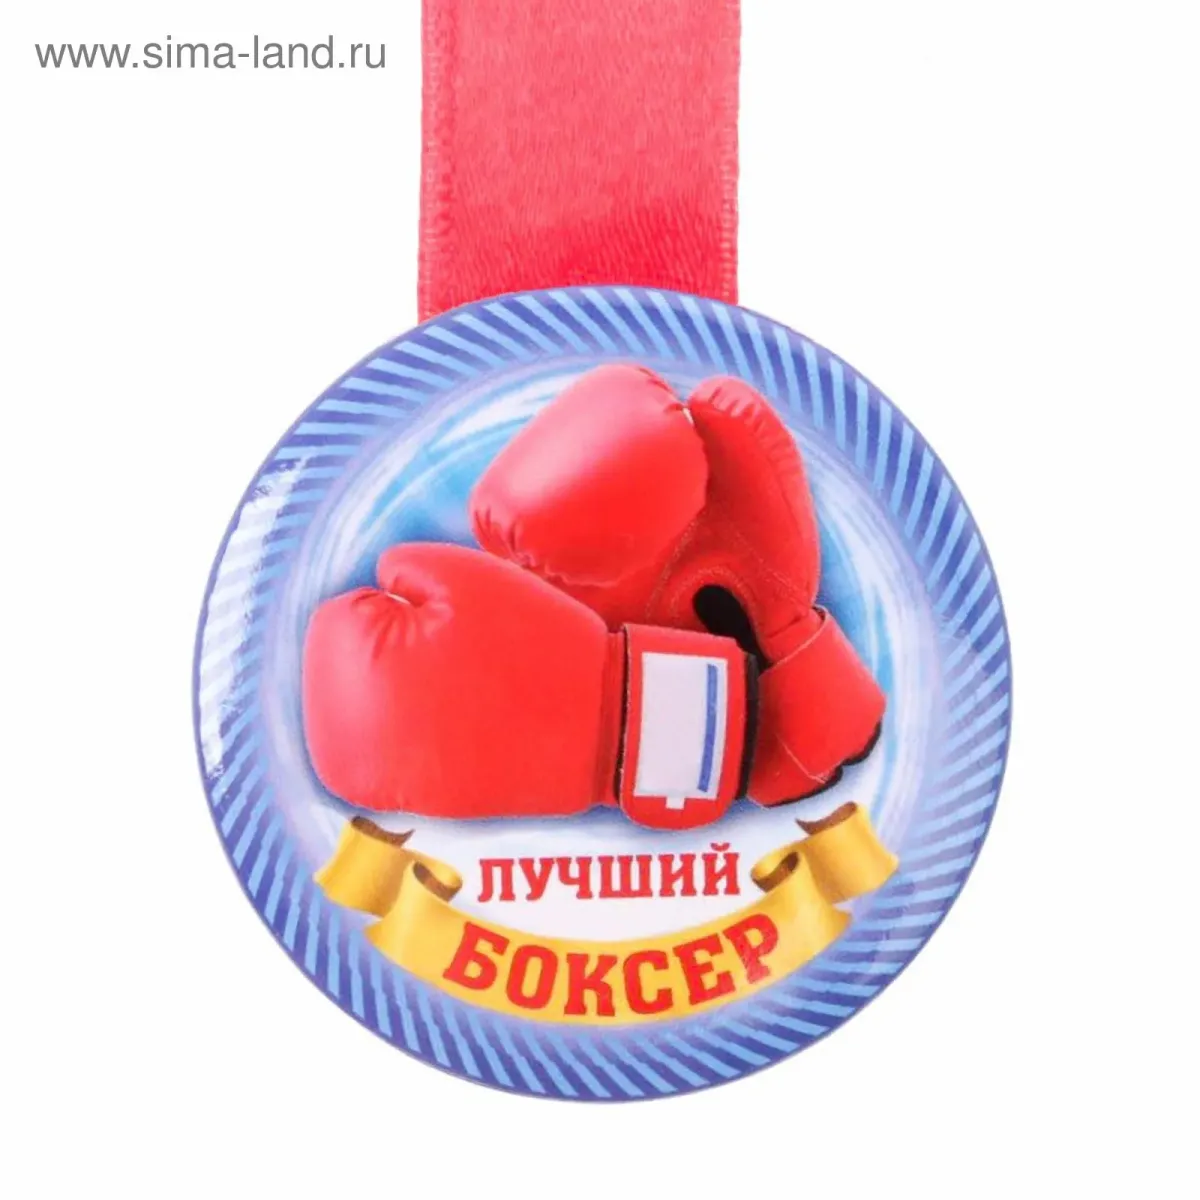 Поздравление боксеру. Медали спортивные. Боксер с медалями. Лучшему боксеру. Боксерские перчатки и медали.